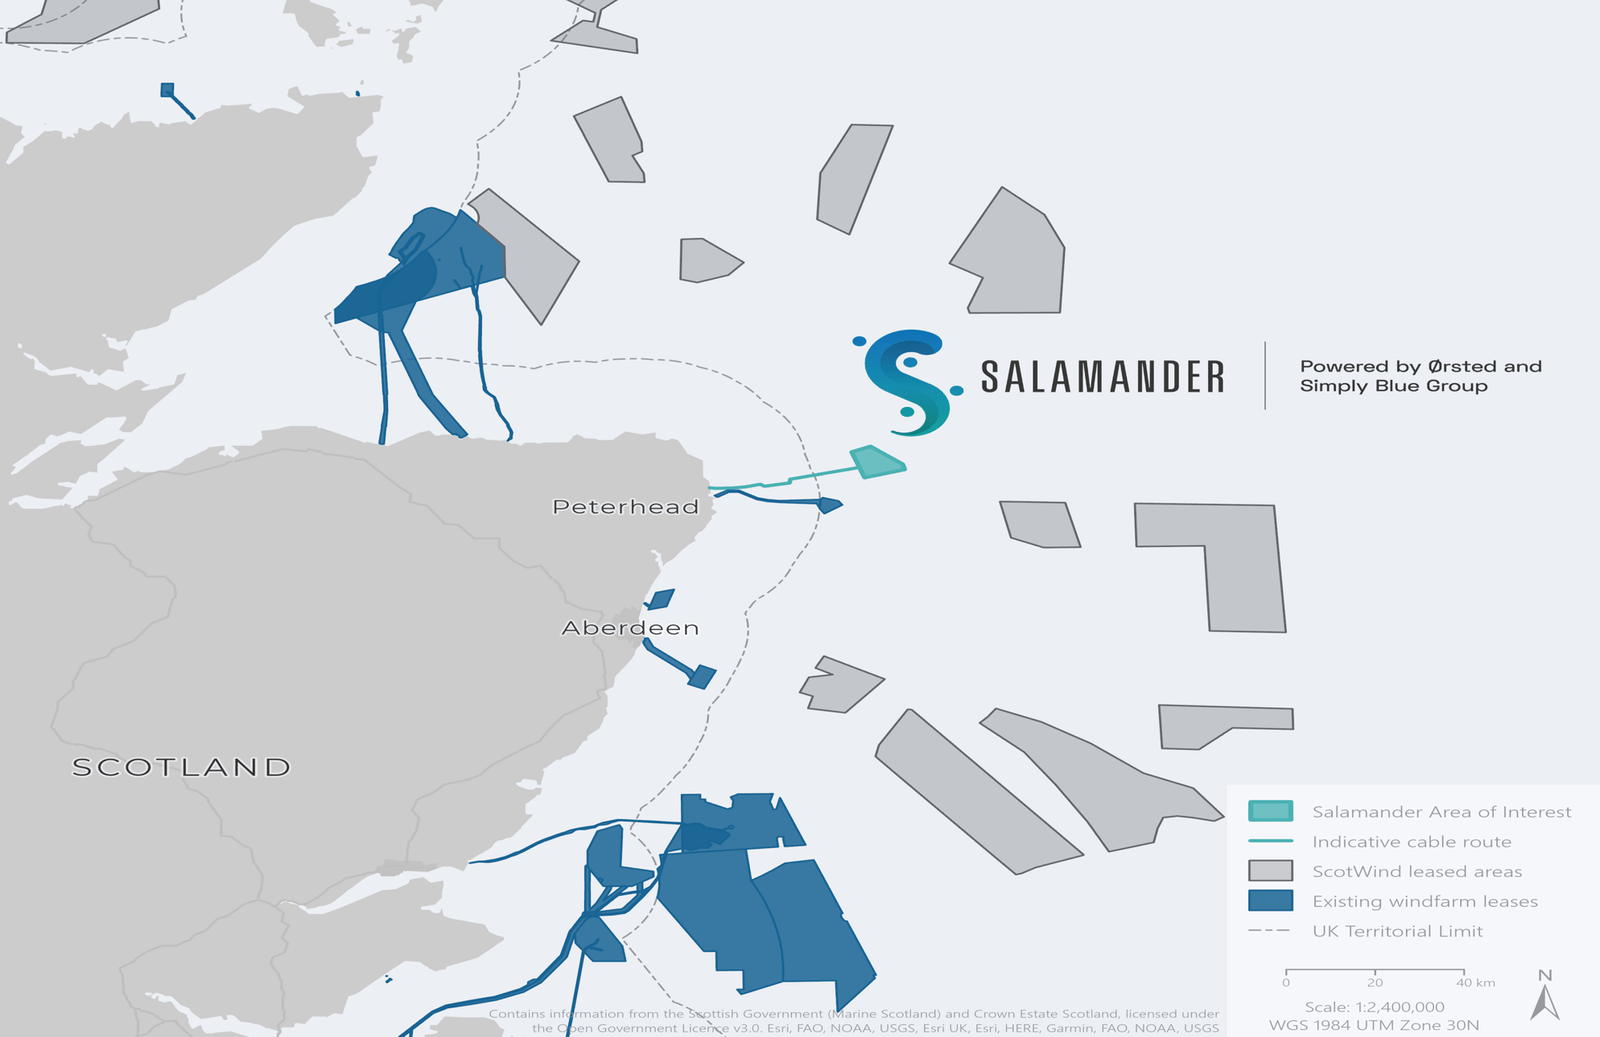 Salamander floating offshore windfarm events